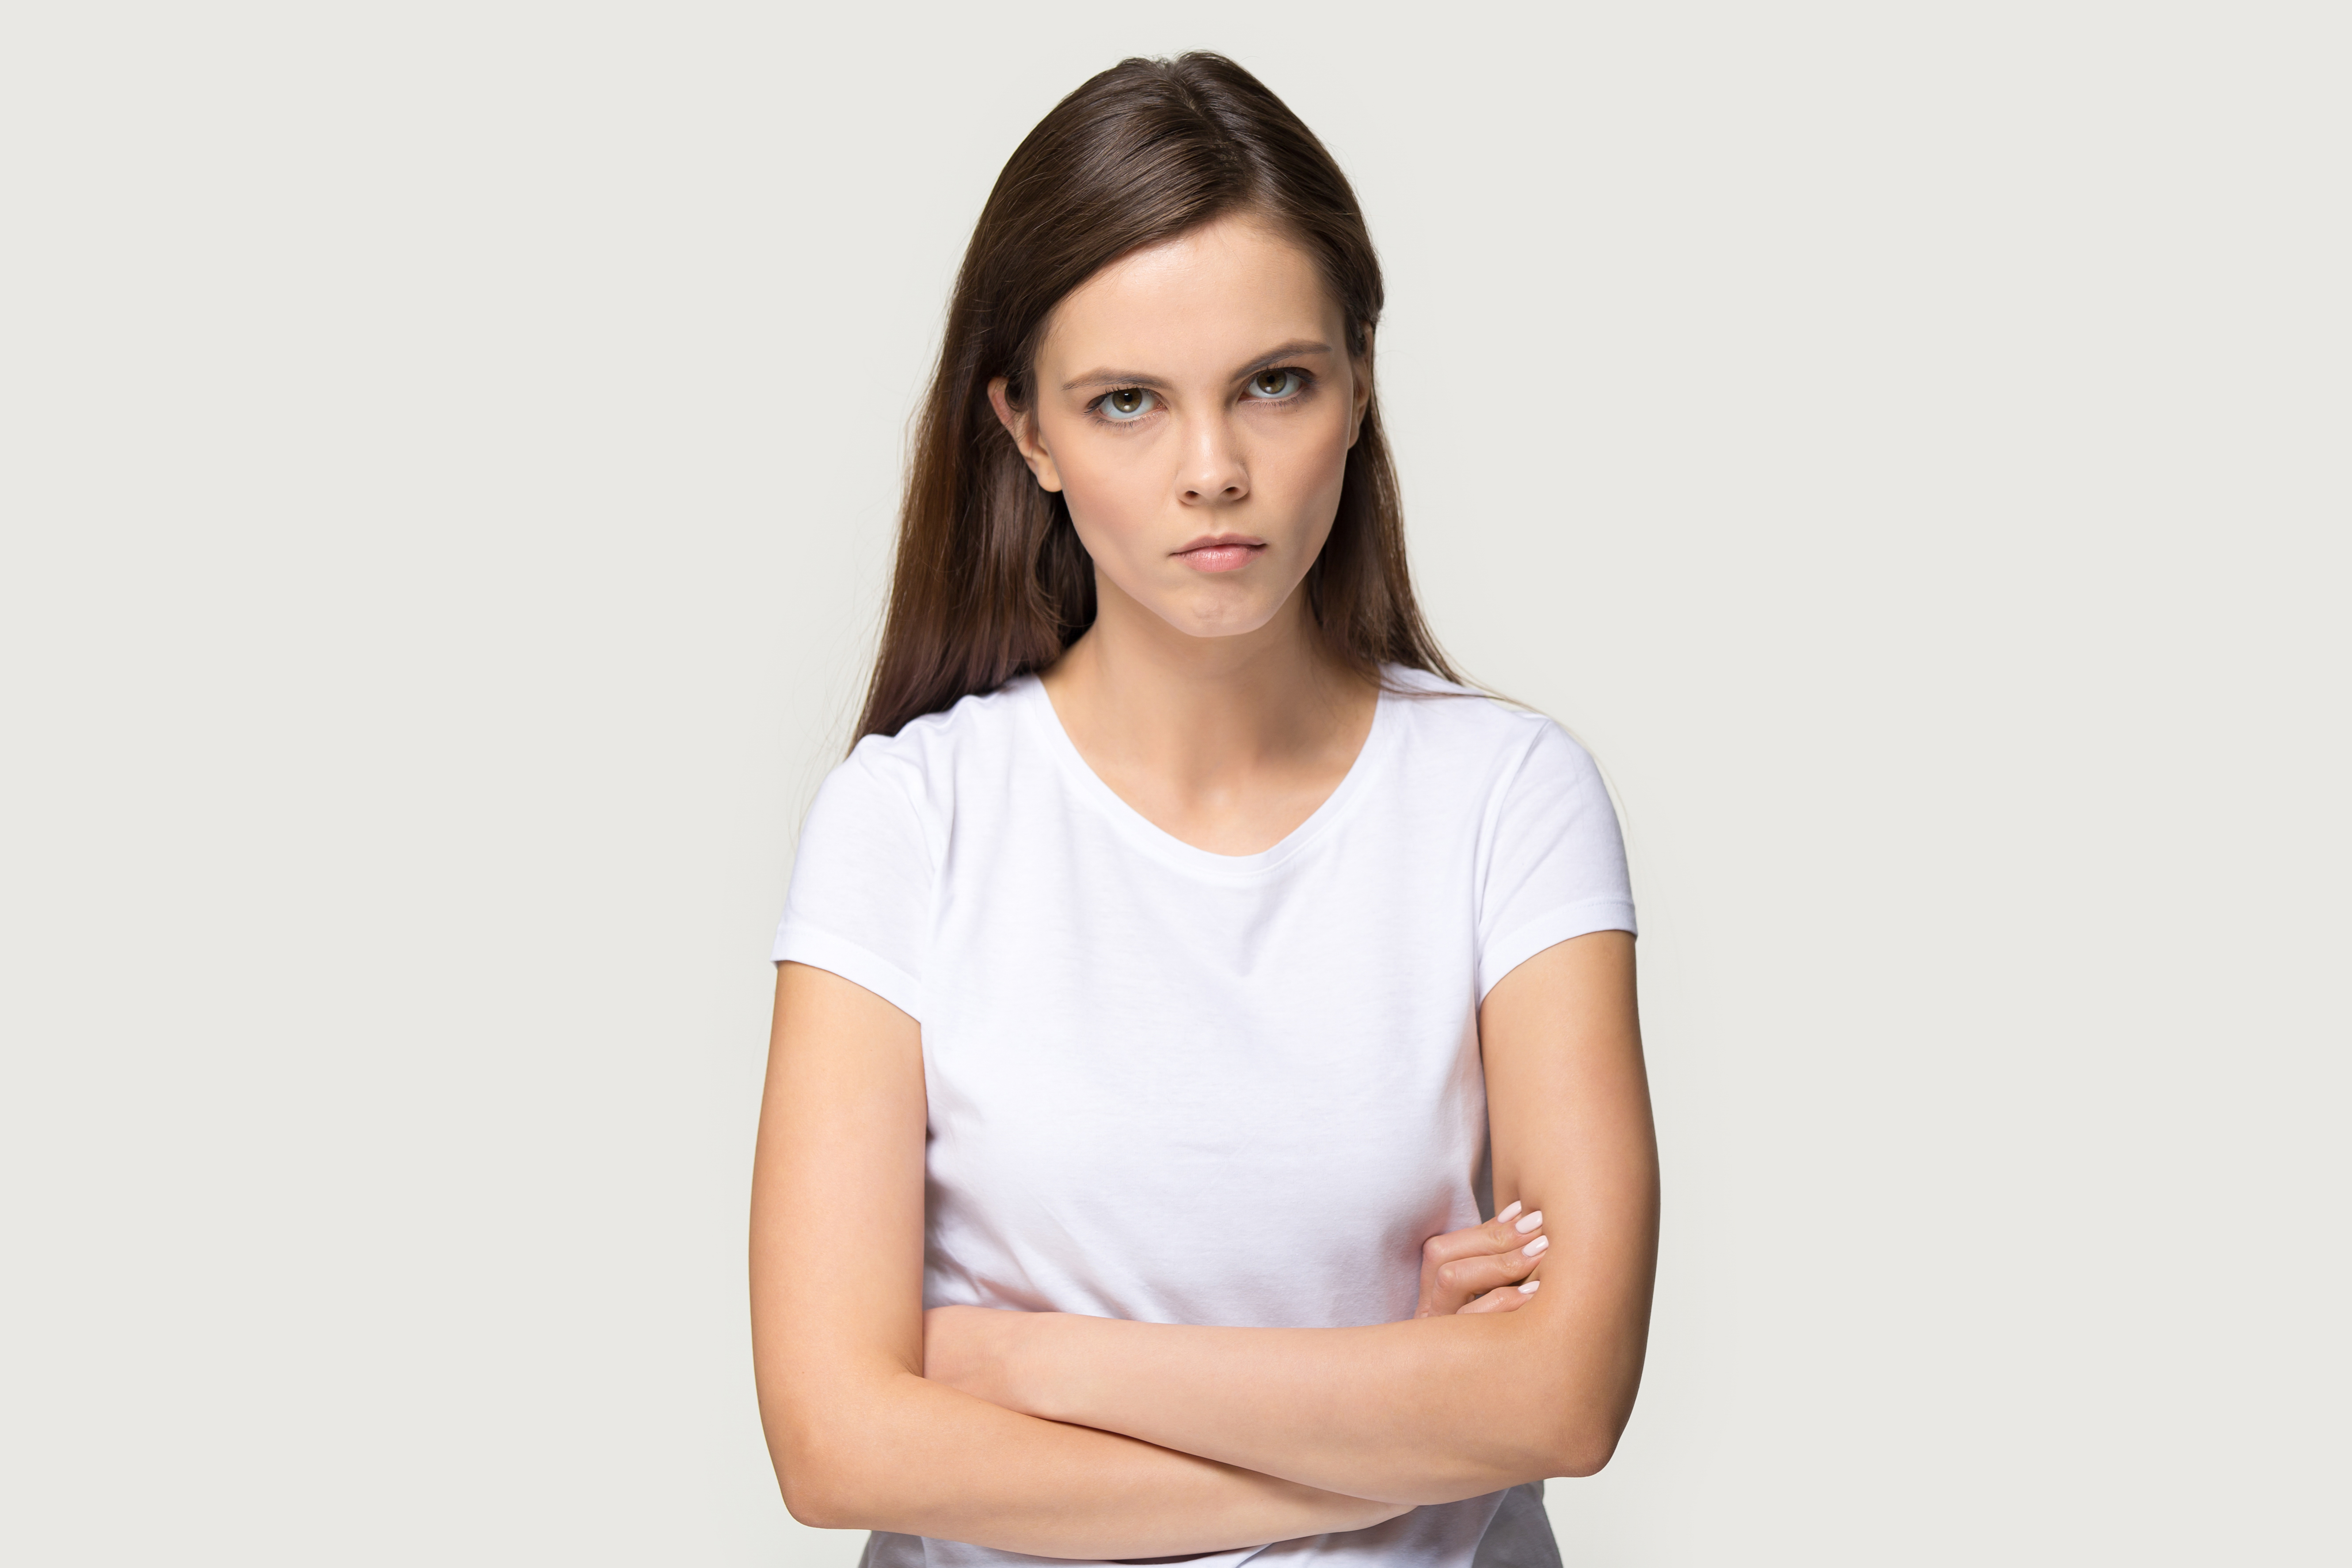 Eine junge Frau mit skeptischem Blick | Quelle: Shutterstock